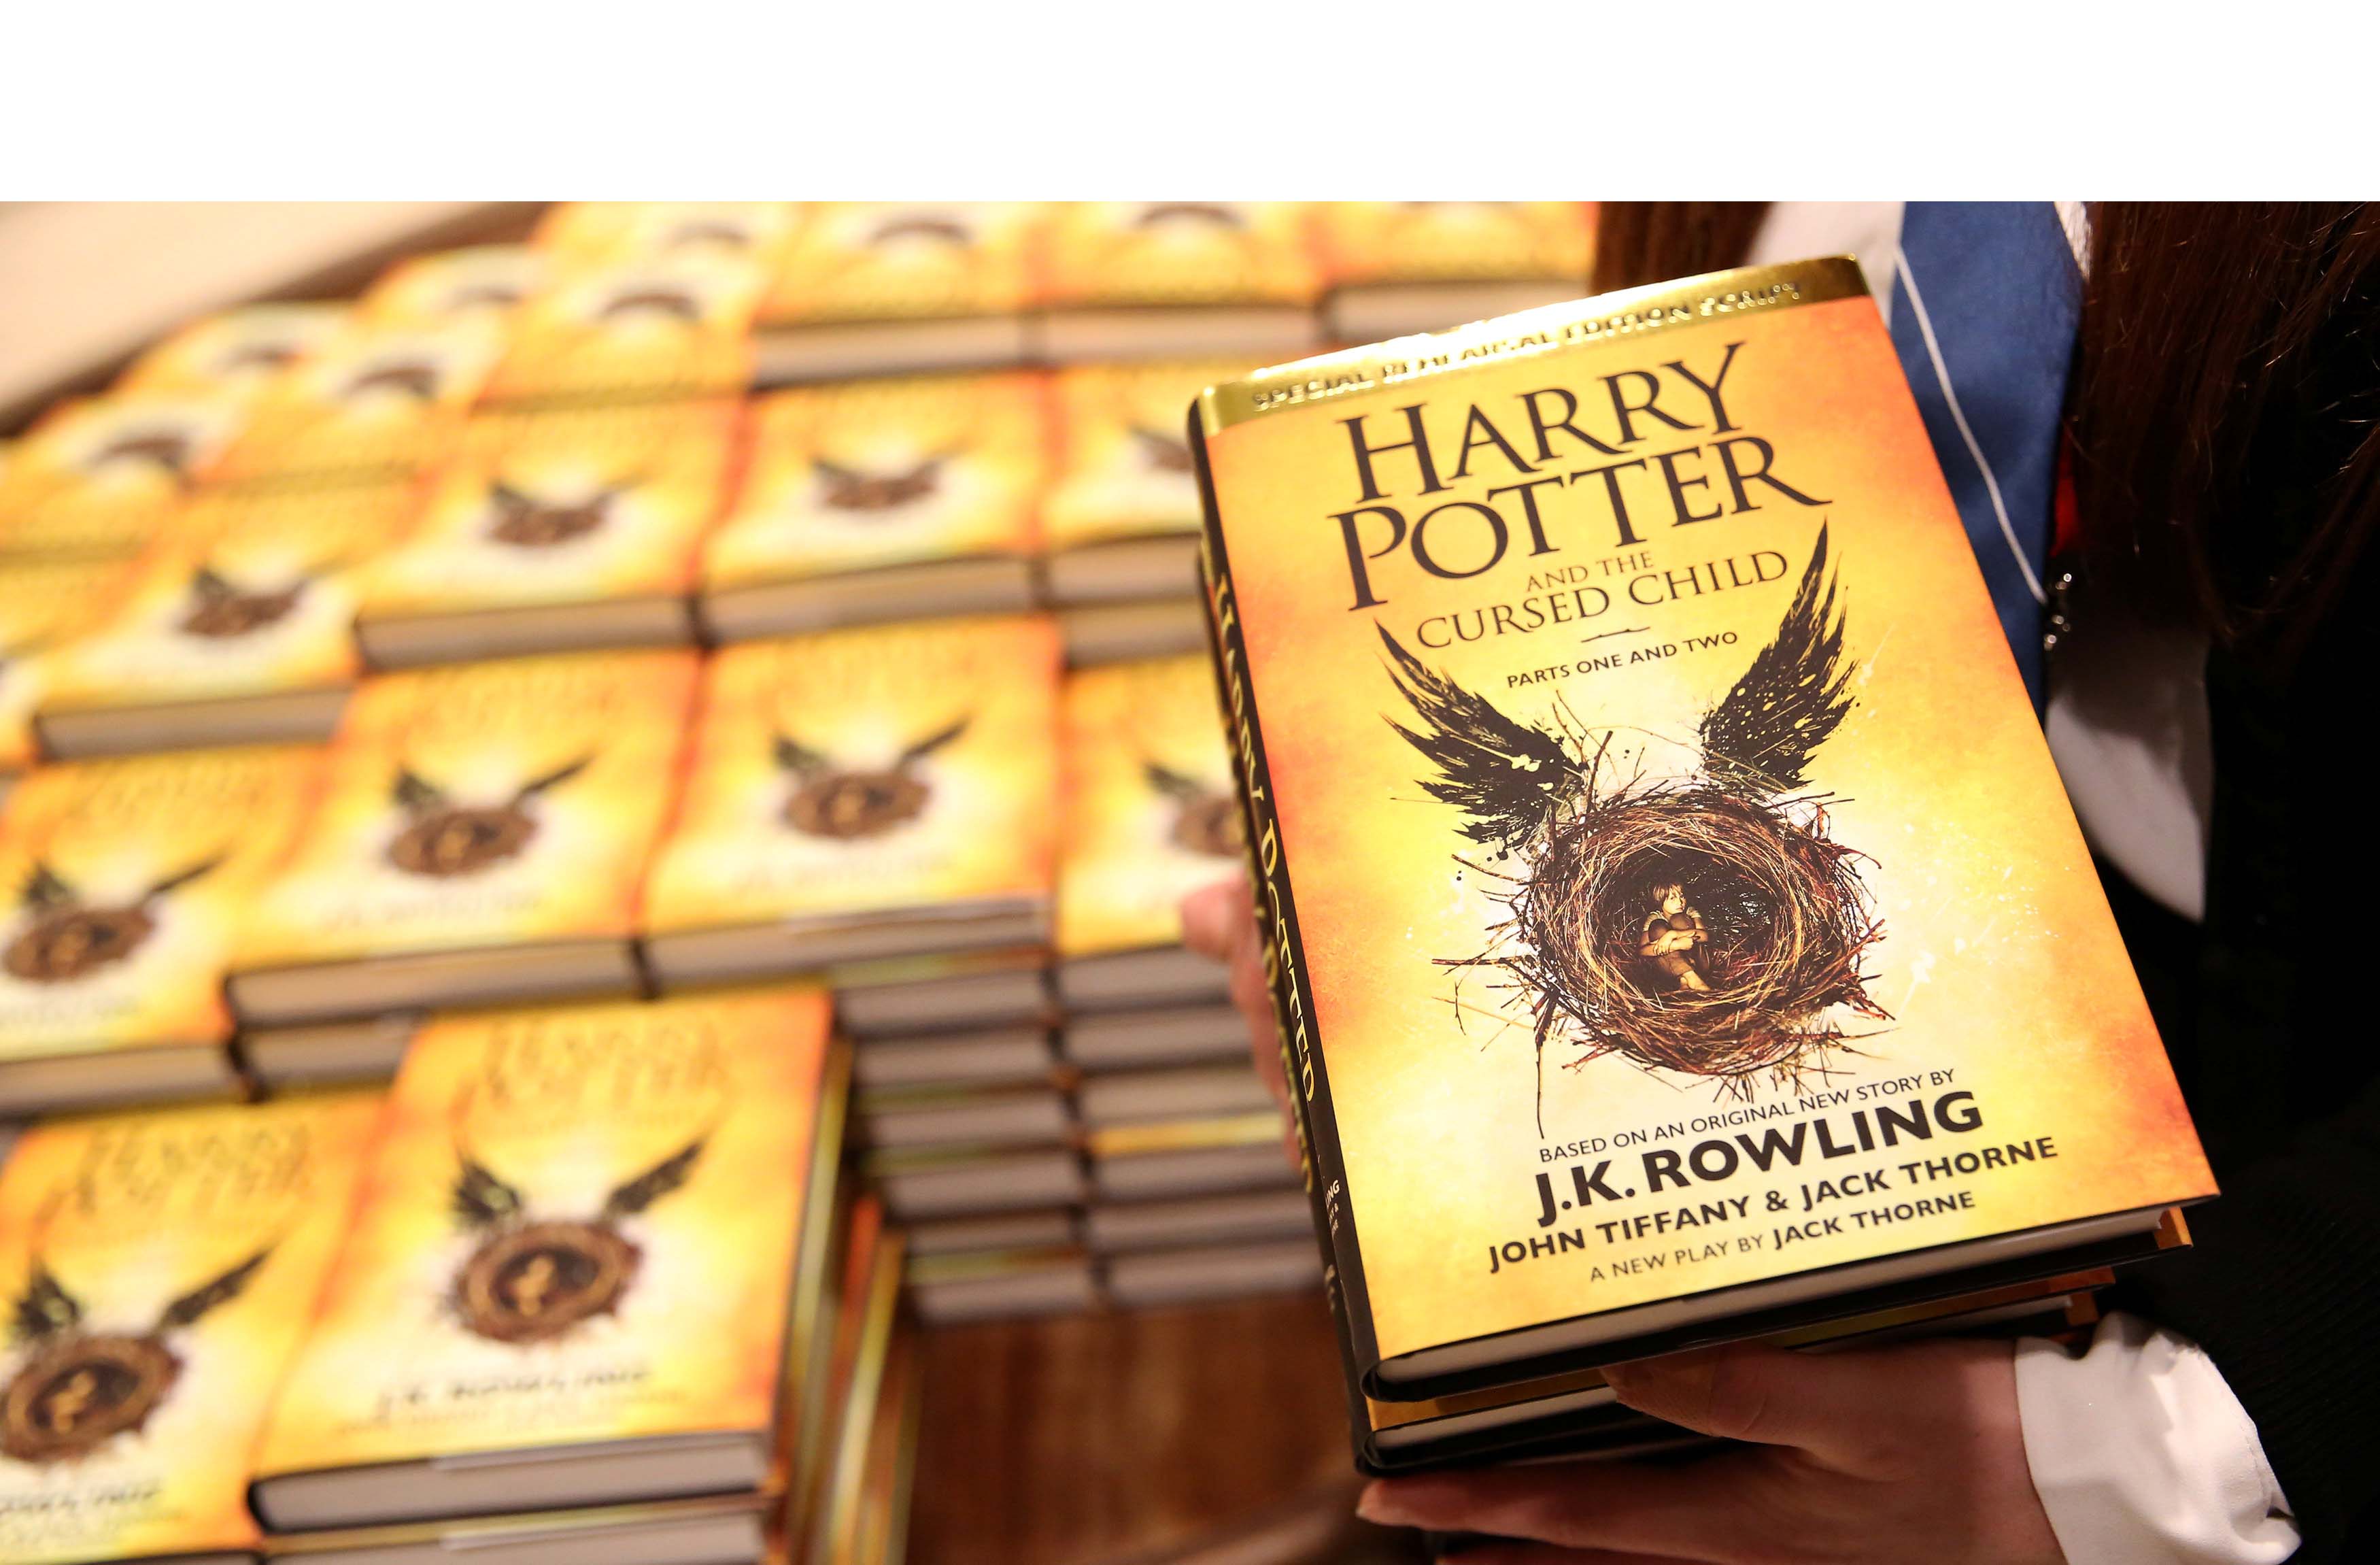 Tras su publicación, la nueva entrega de la saga "Harry Potter y el legado maldito" llegará en versión español el próximo 28 de septiembre